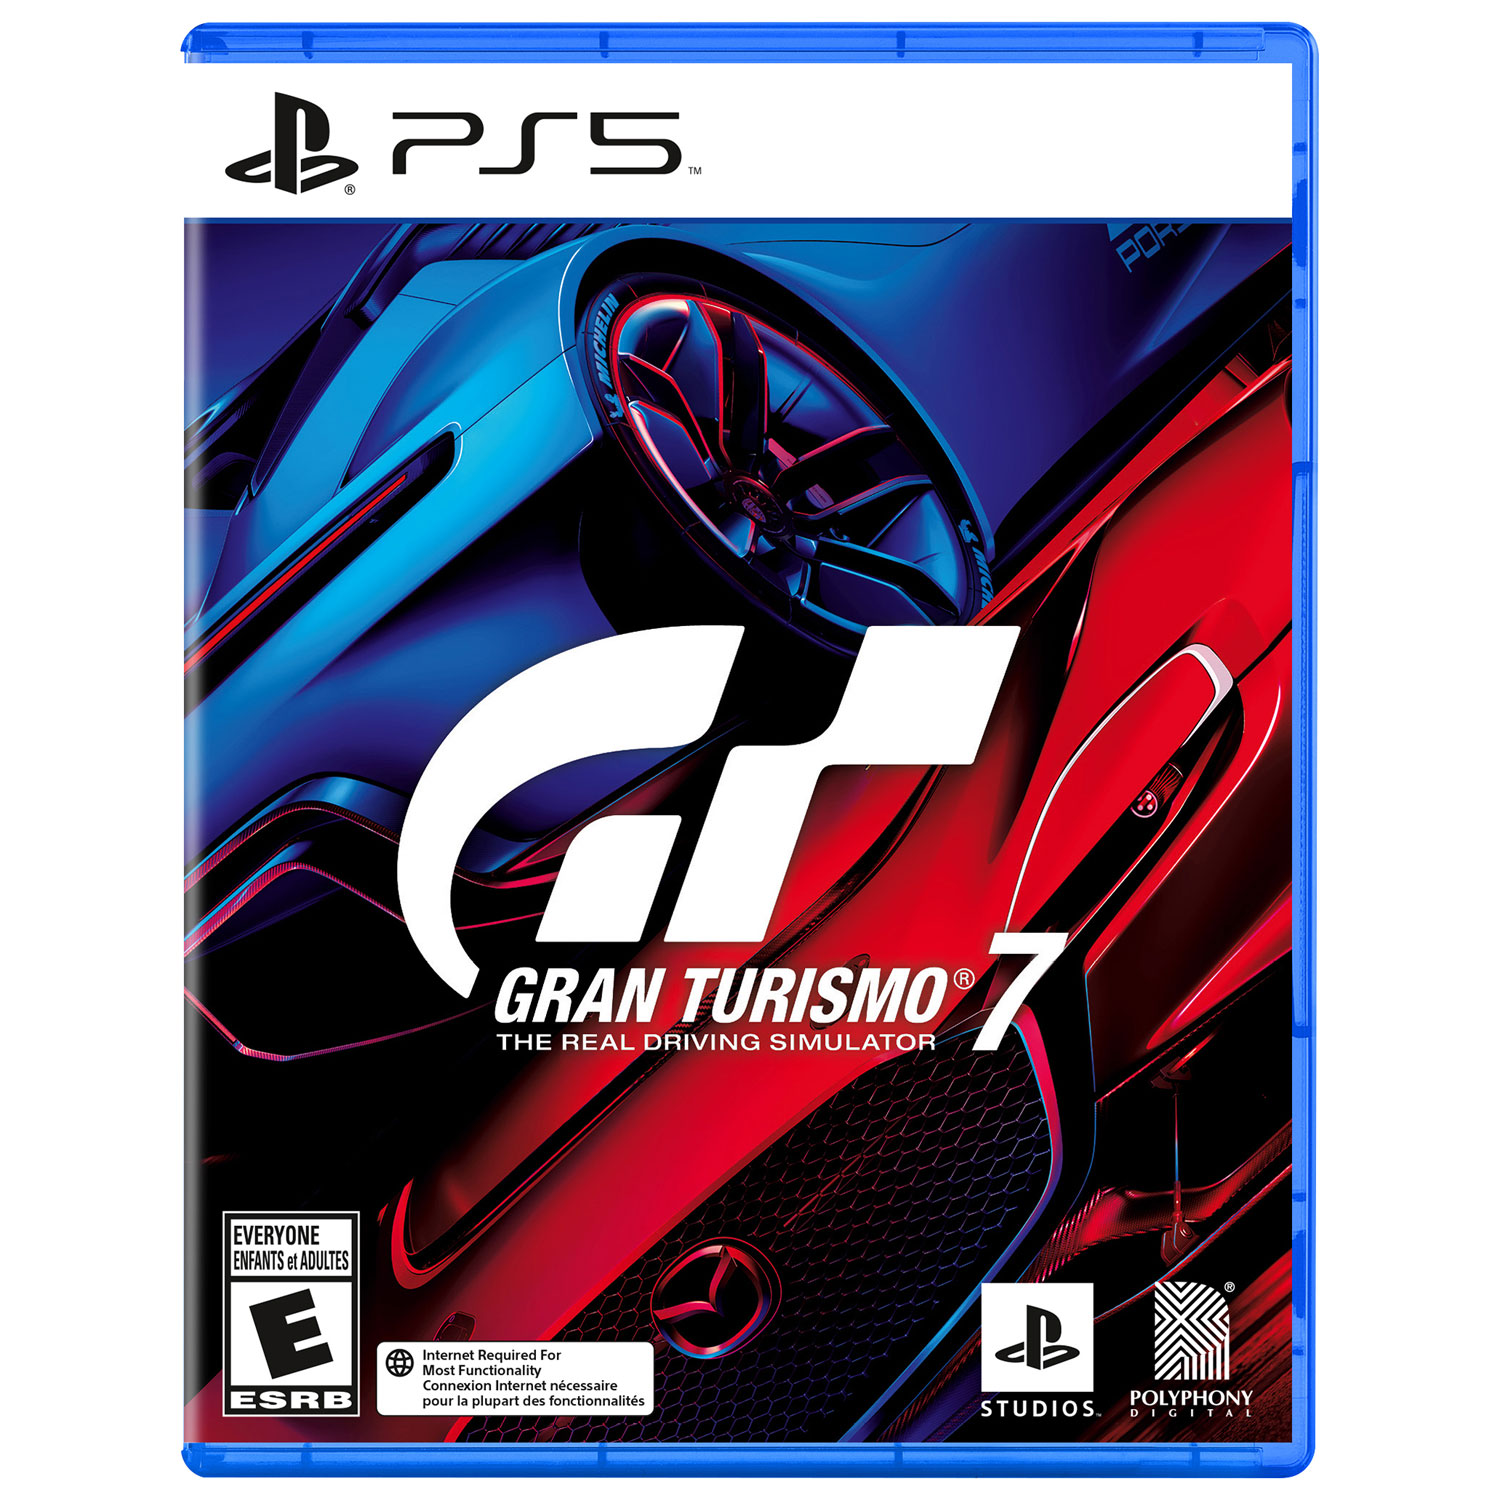 Gran Turismo 7 (PS5)